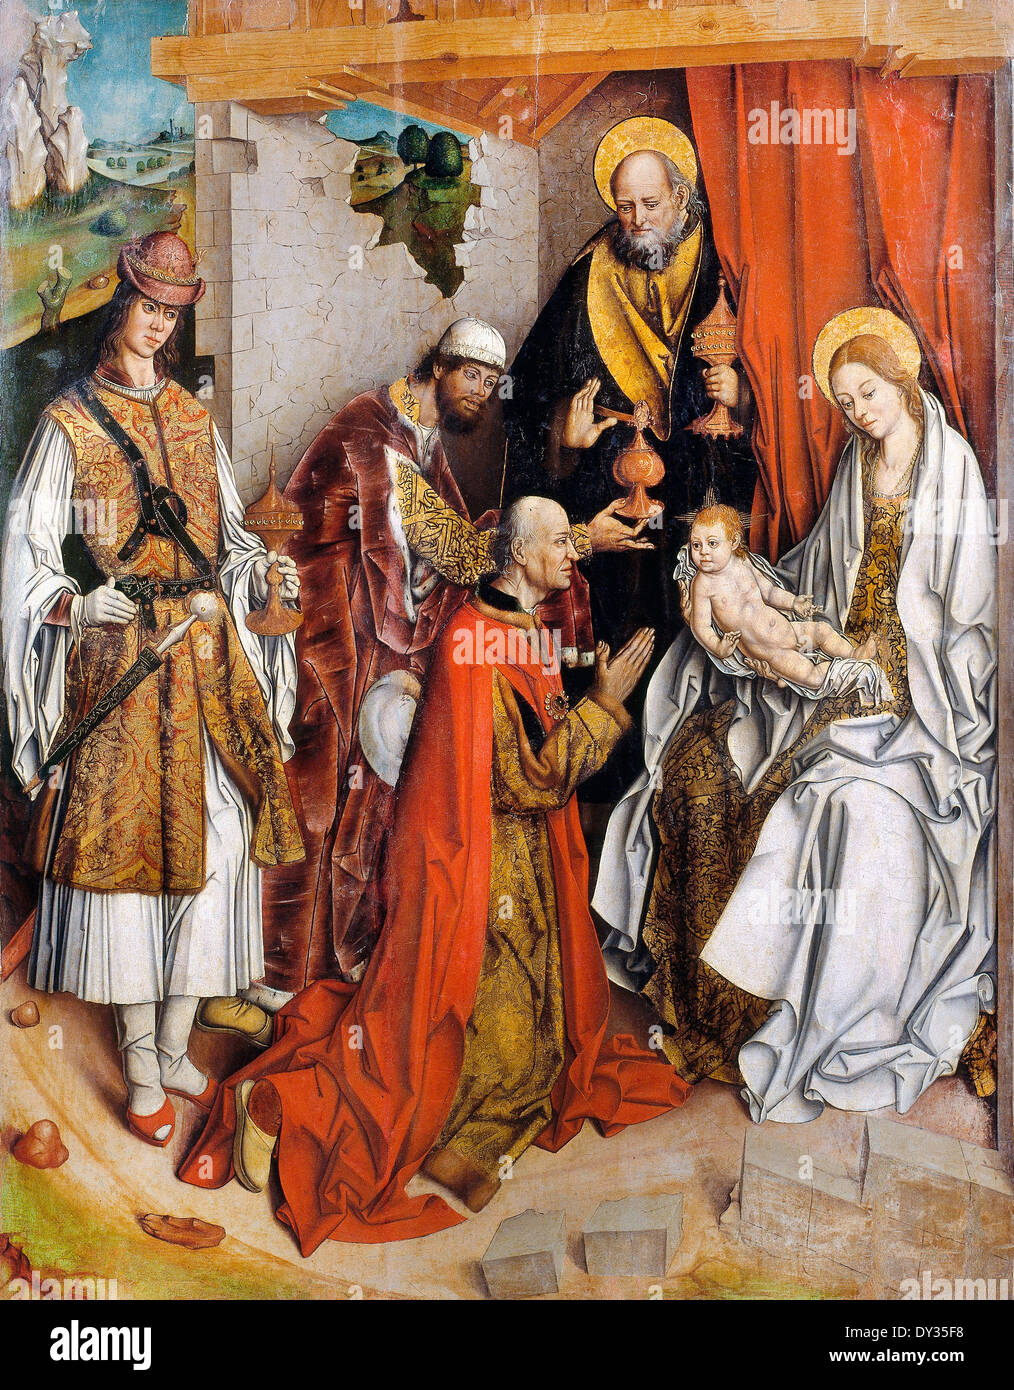 Fernando Gallego, Epiphanie. Circa 1480-1490. Huile et feuille d'or sur bois. Museu Nacional d'Art de Catalunya, Barcelone, Espagne. Banque D'Images